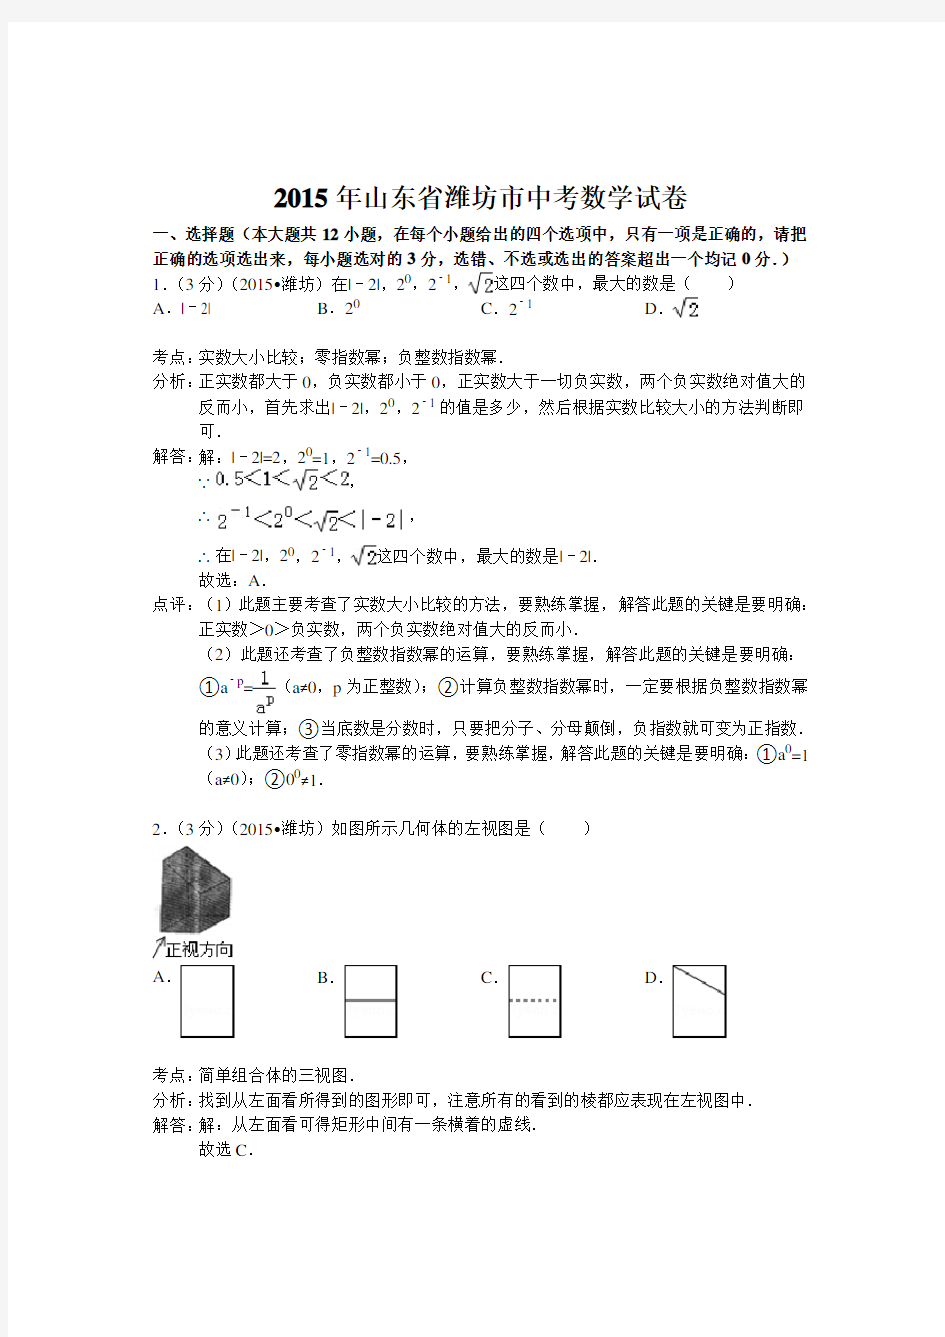 (完整版)山东省潍坊市2015年中考数学试卷(解析版)